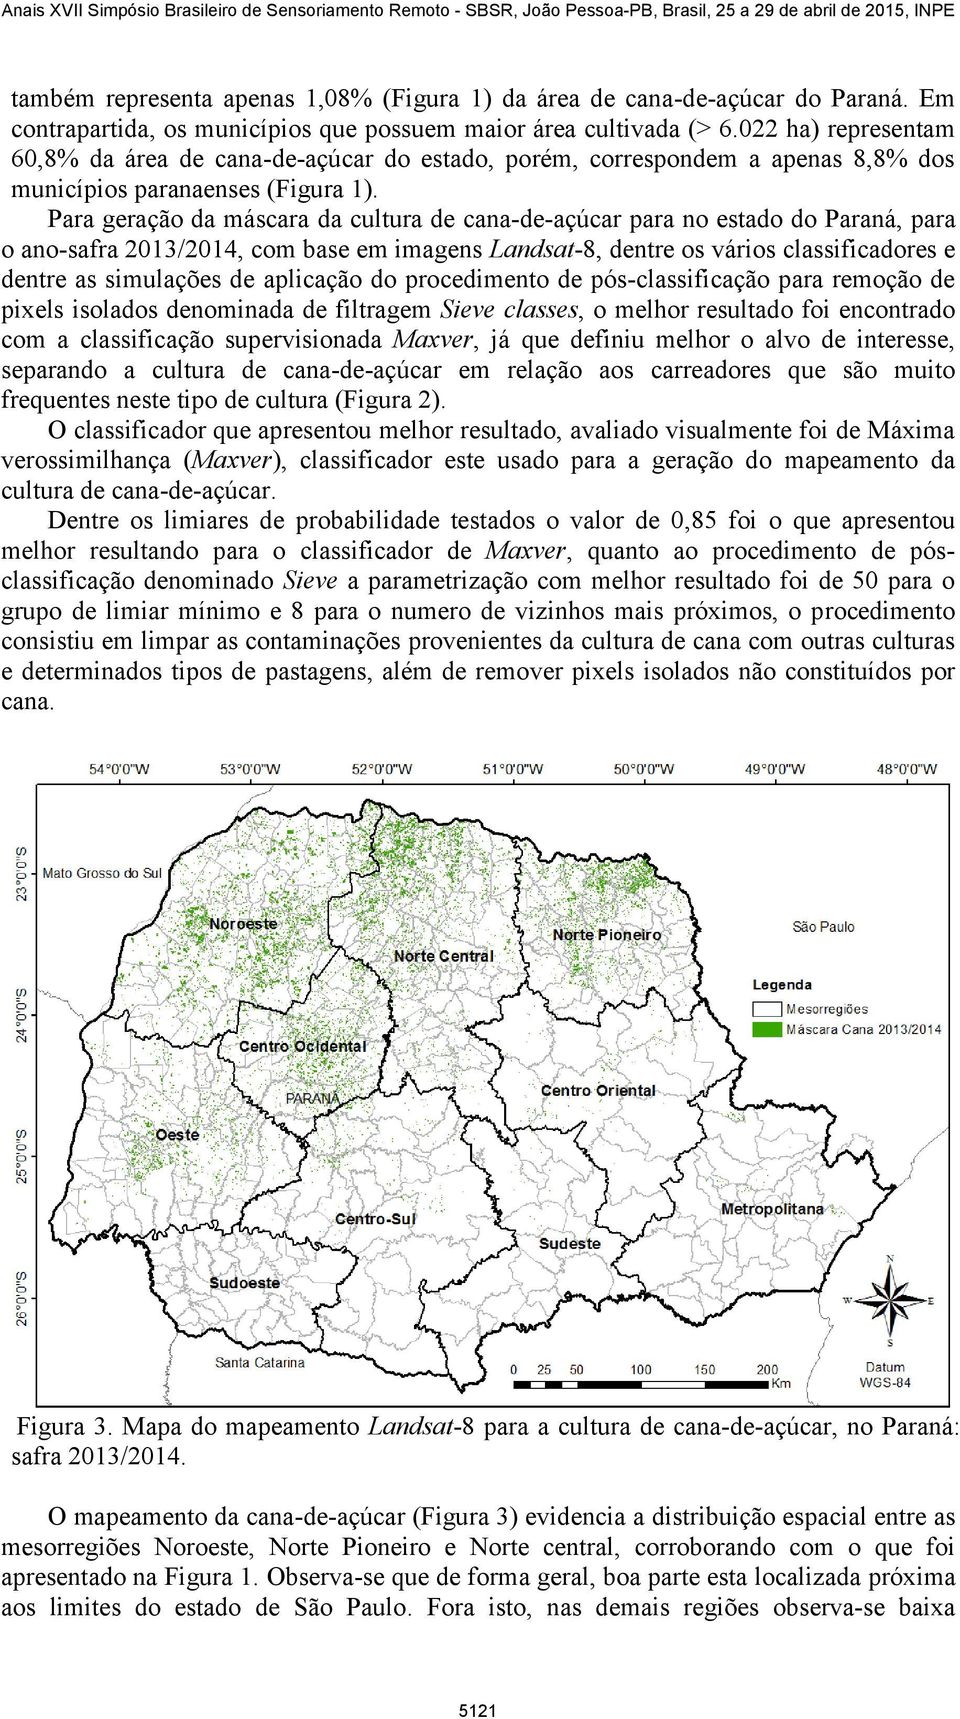 Para geração da máscara da cultura de cana-de-açúcar para no estado do Paraná, para o ano-safra 2013/2014, com base em imagens Landsat-8, dentre os vários classificadores e dentre as simulações de